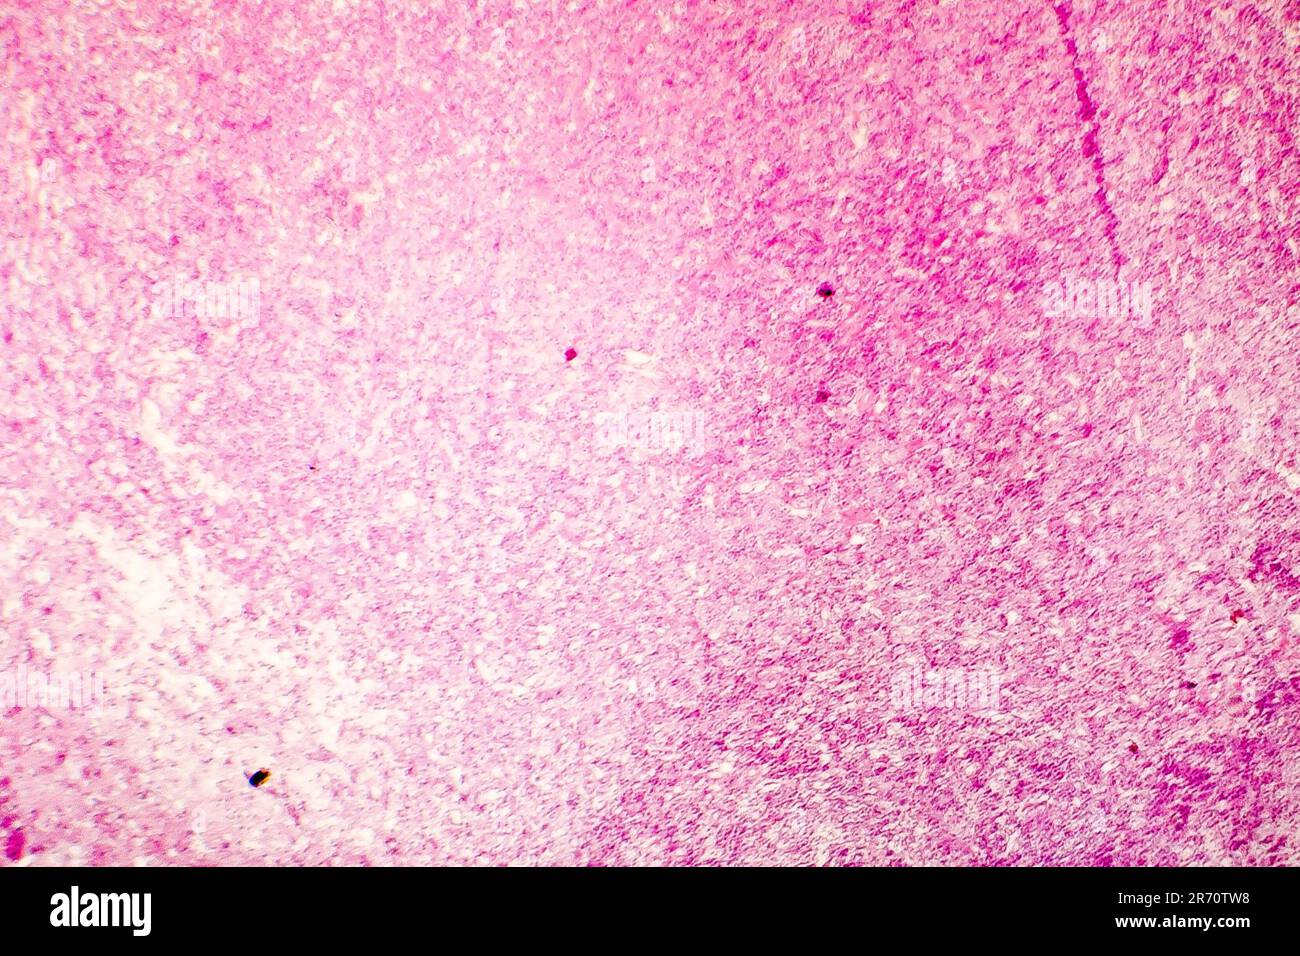 Nécrose liquefactive du cerveau humain, photomicrographe lumineux montrant la perte des contours cellulaires, l'accumulation de débris cellulaires, macrophages infiltratio Banque D'Images